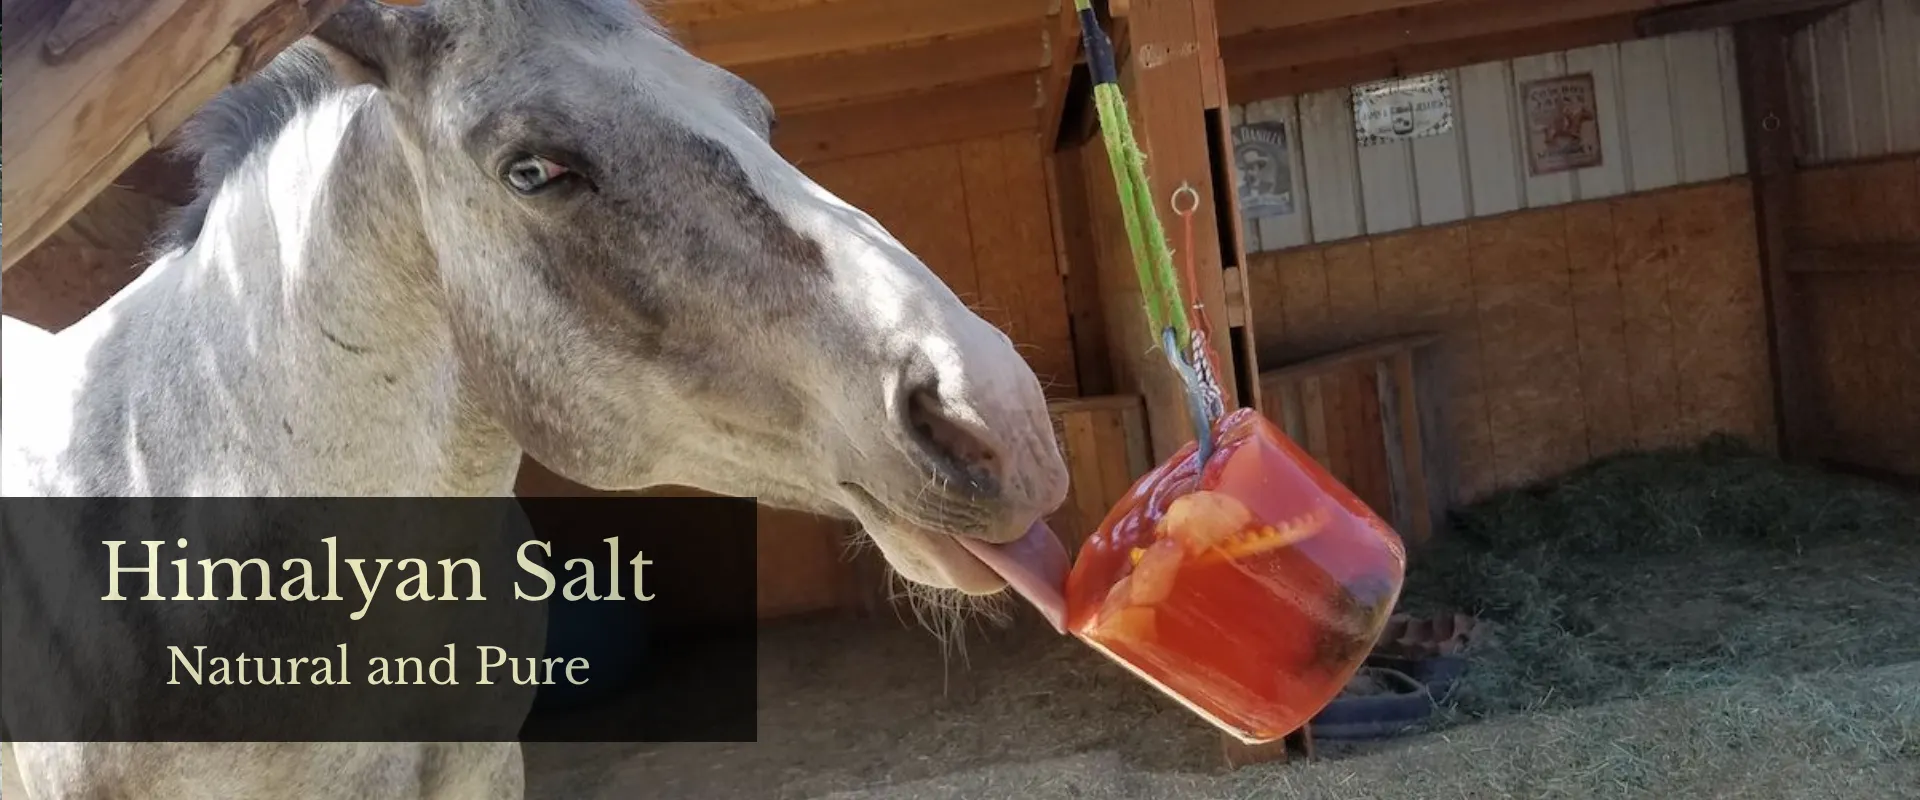 horse-licking-himalayan-salt-thumbal